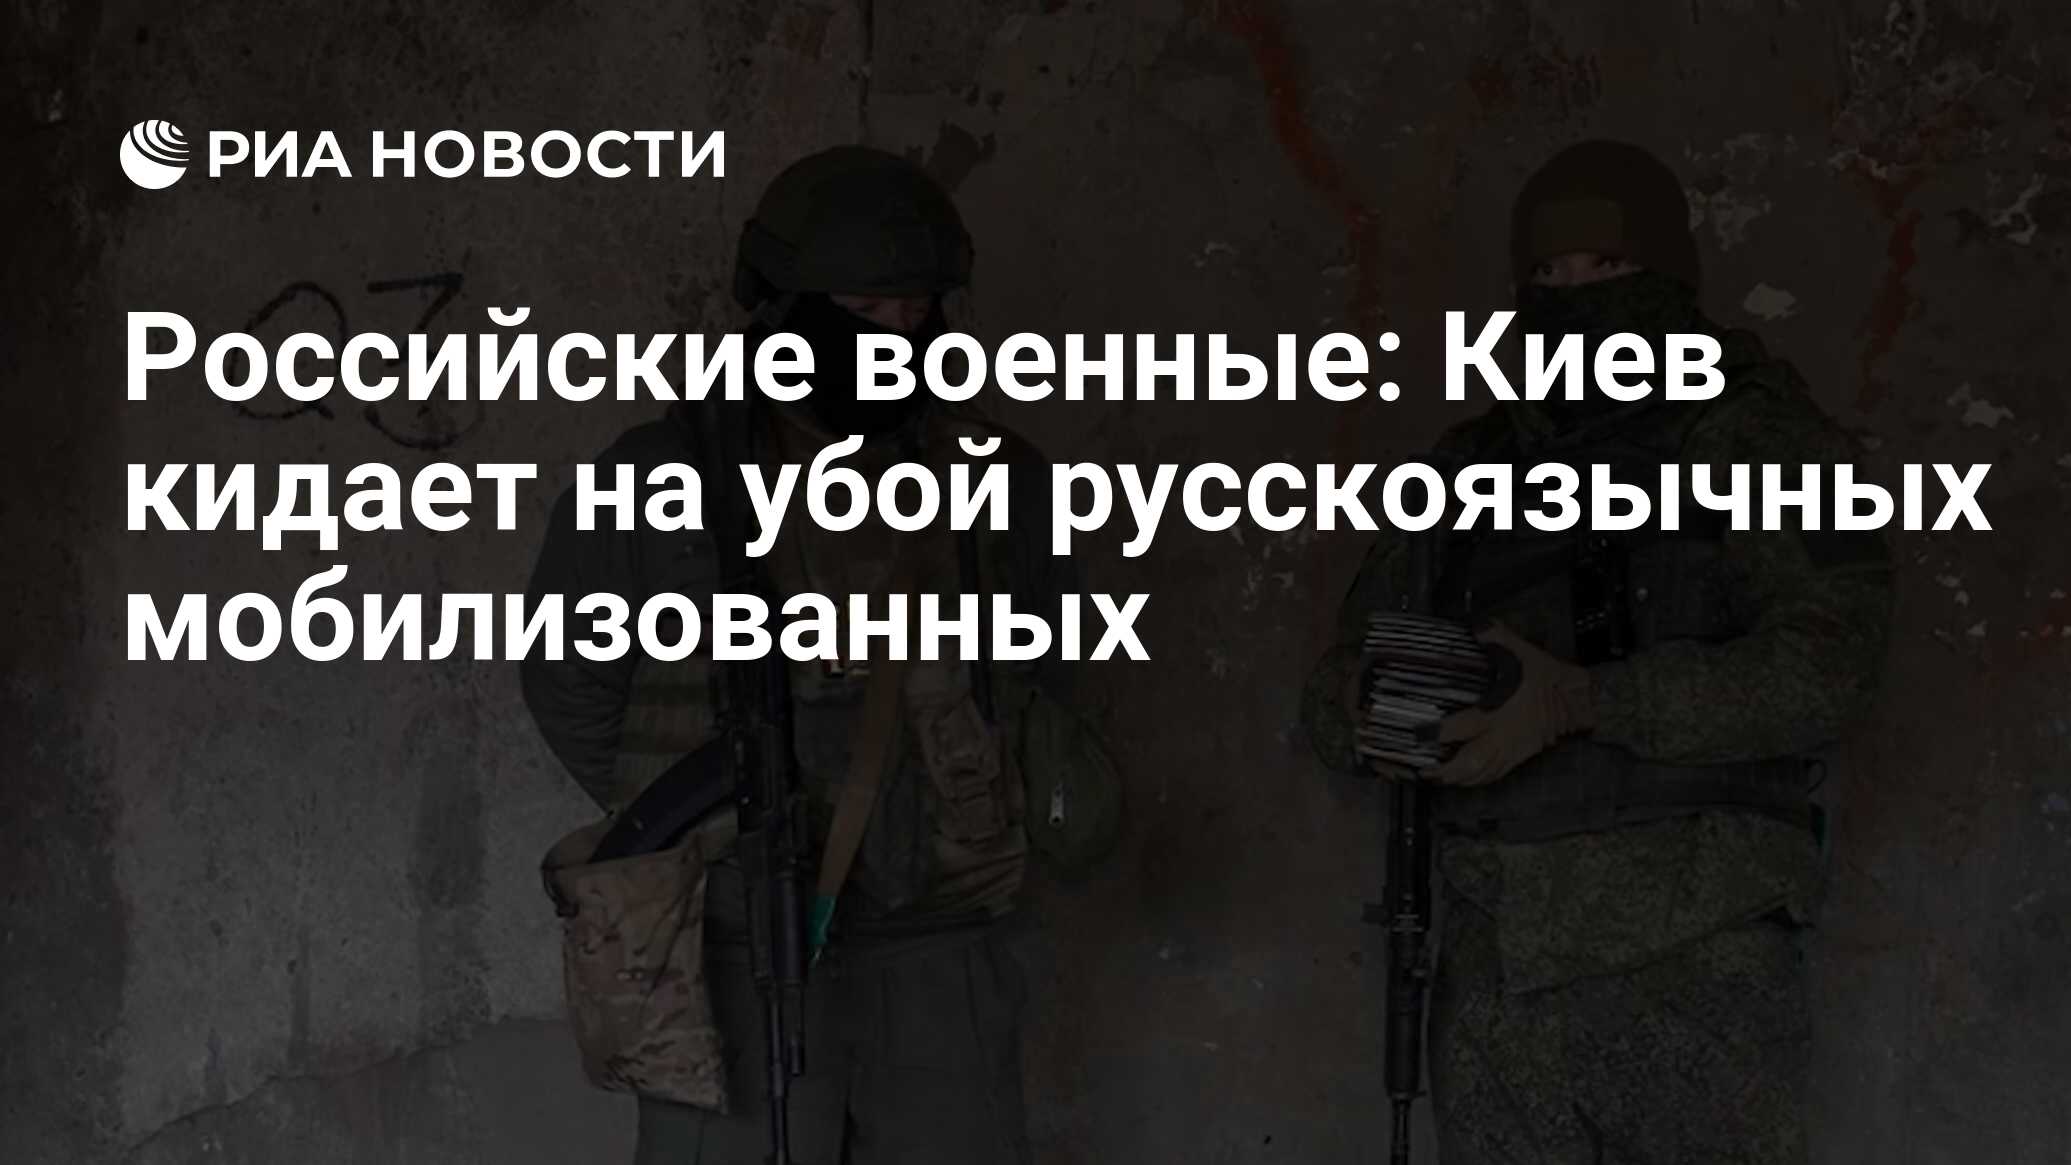 Вооруженные силы Украины нацелены на русскоязычных, мобилизованных на бойню, заявили российские военные